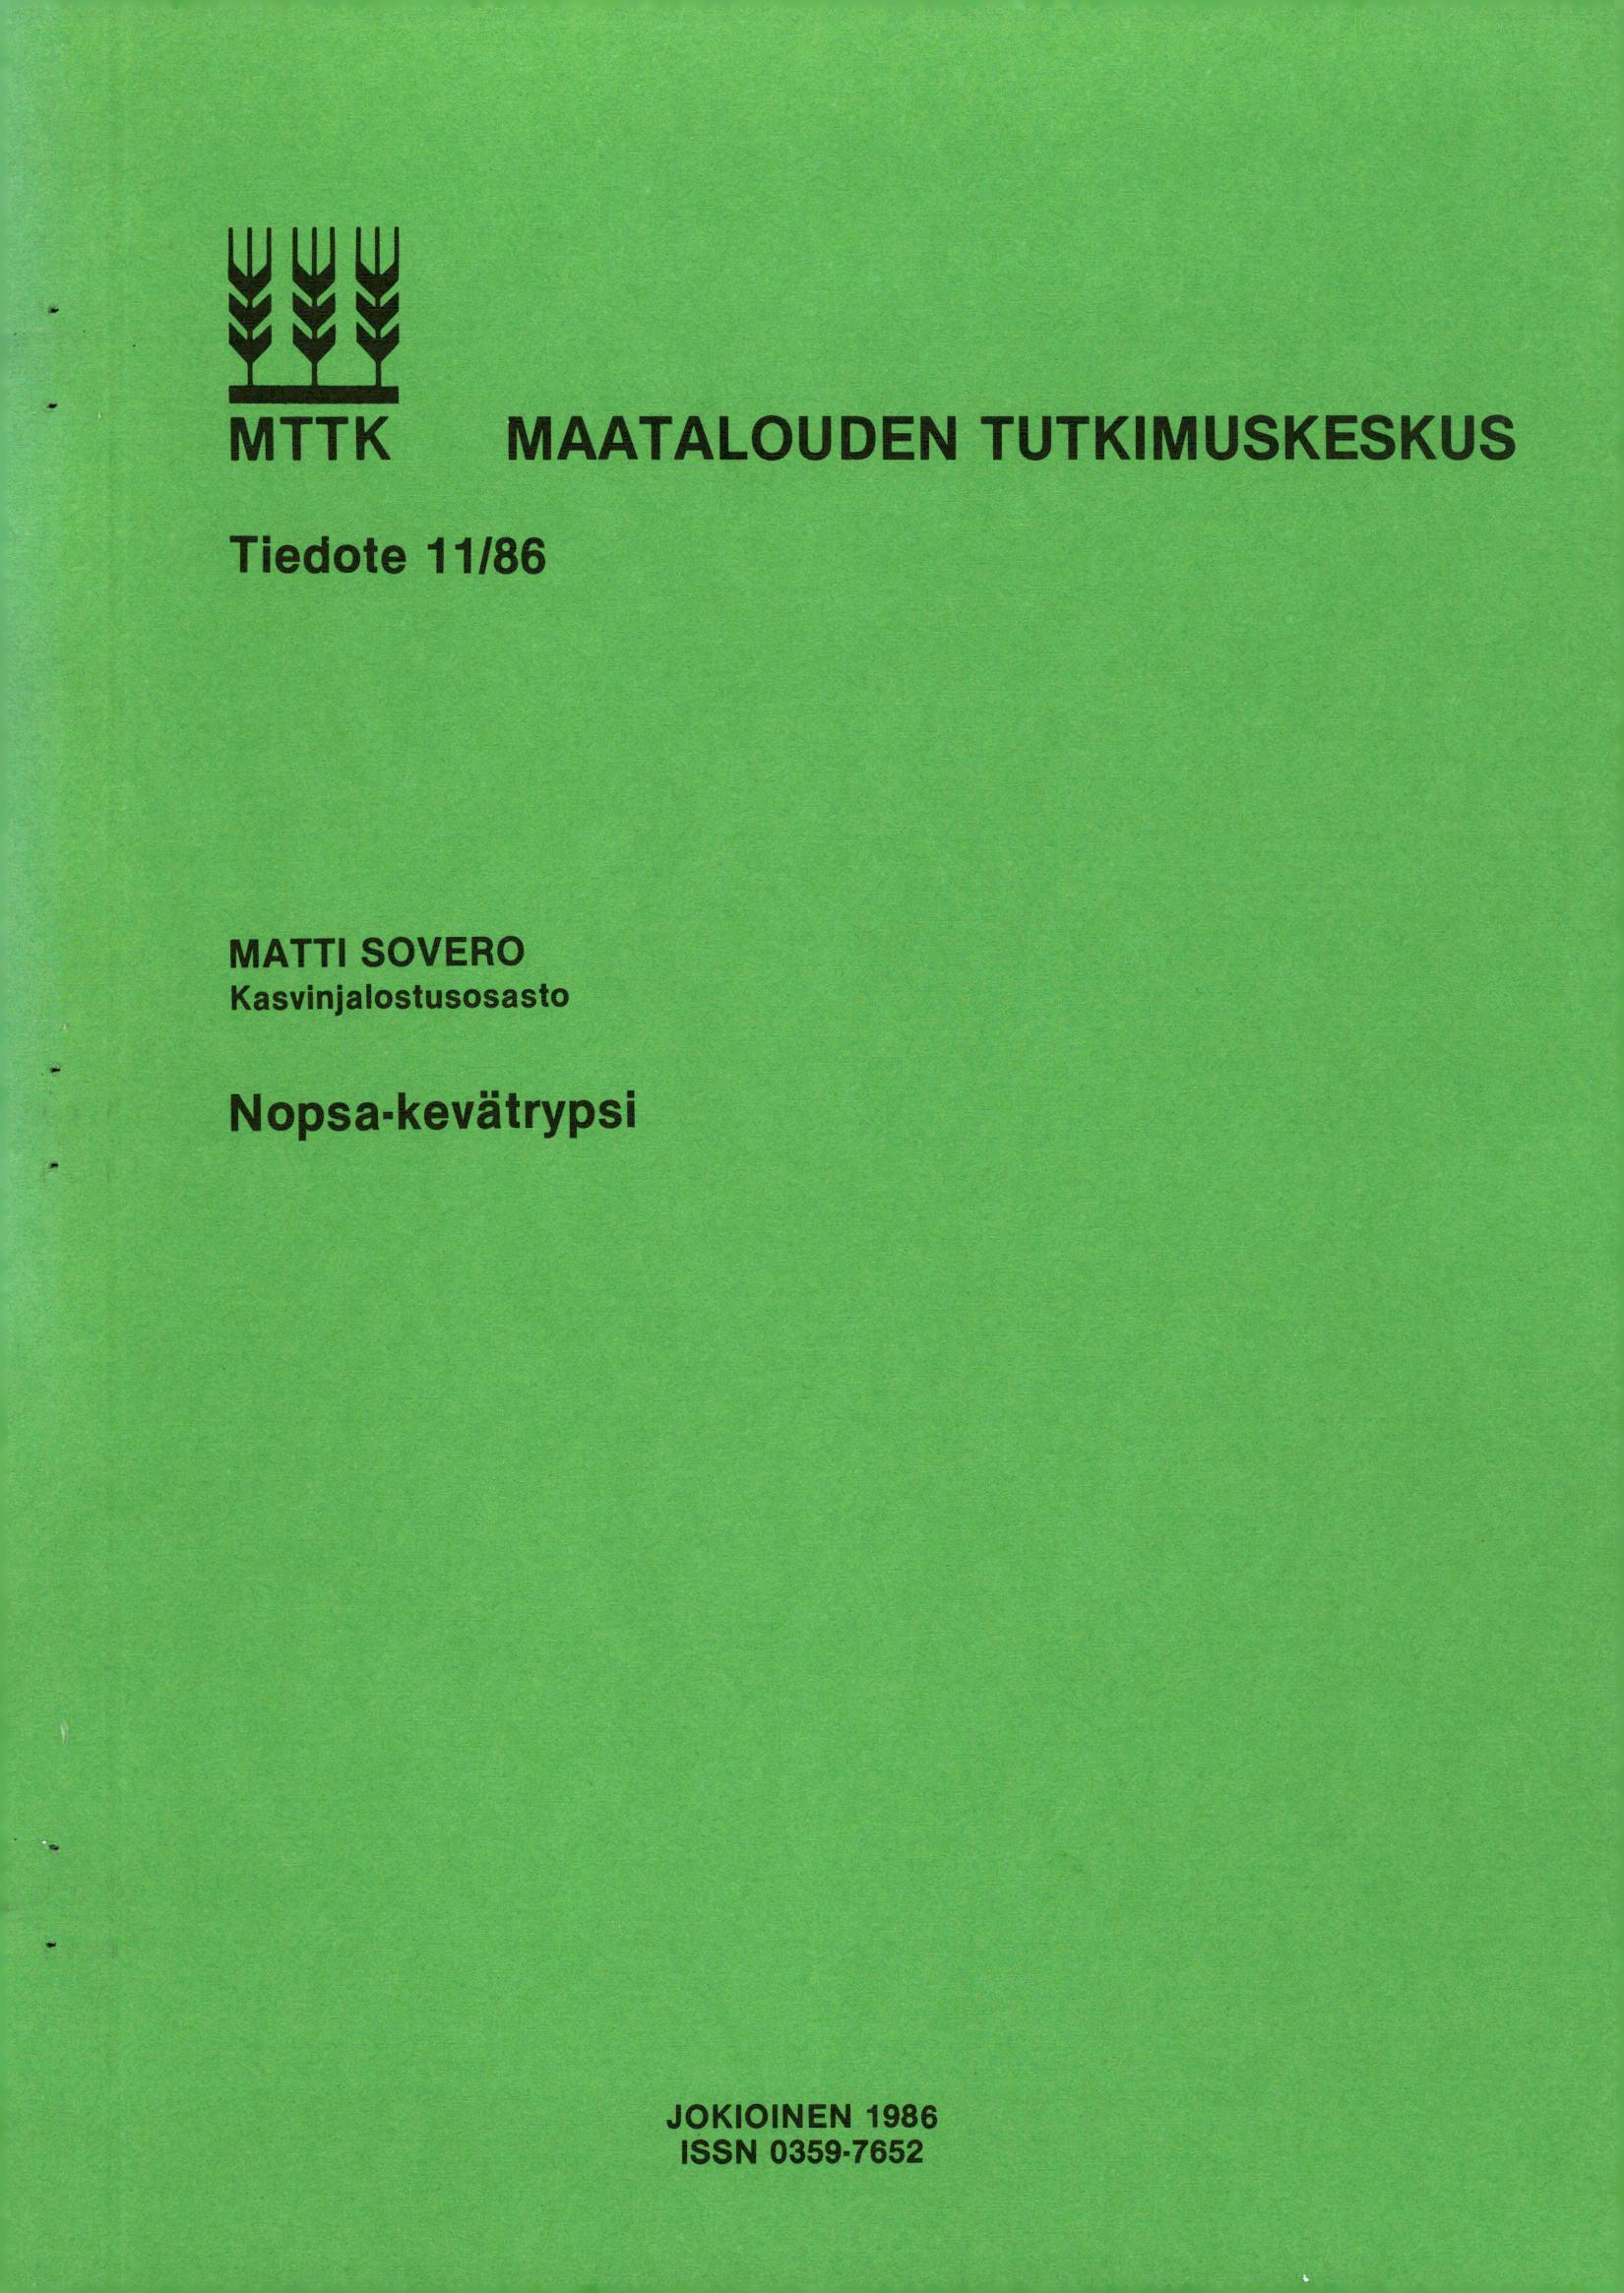 MTTK MAATALOUDEN TUTKIMUSKESKUS Tiedote 11/86 MATTI SOVERO